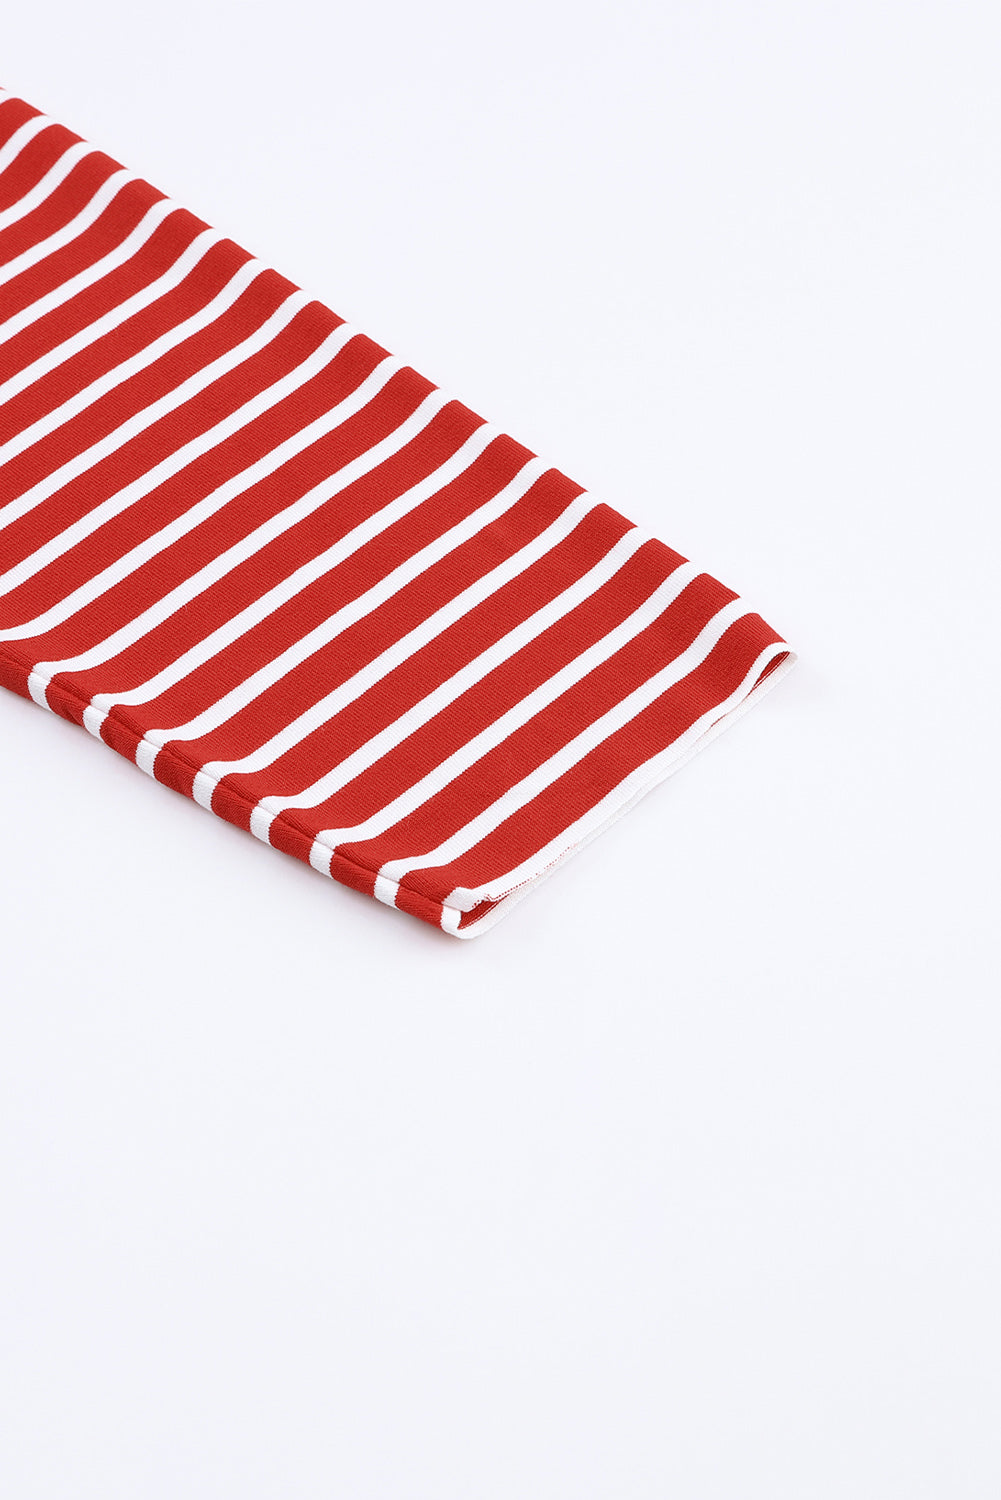 Majica dugih rukava s otvorenim šavovima na crvenim prugama